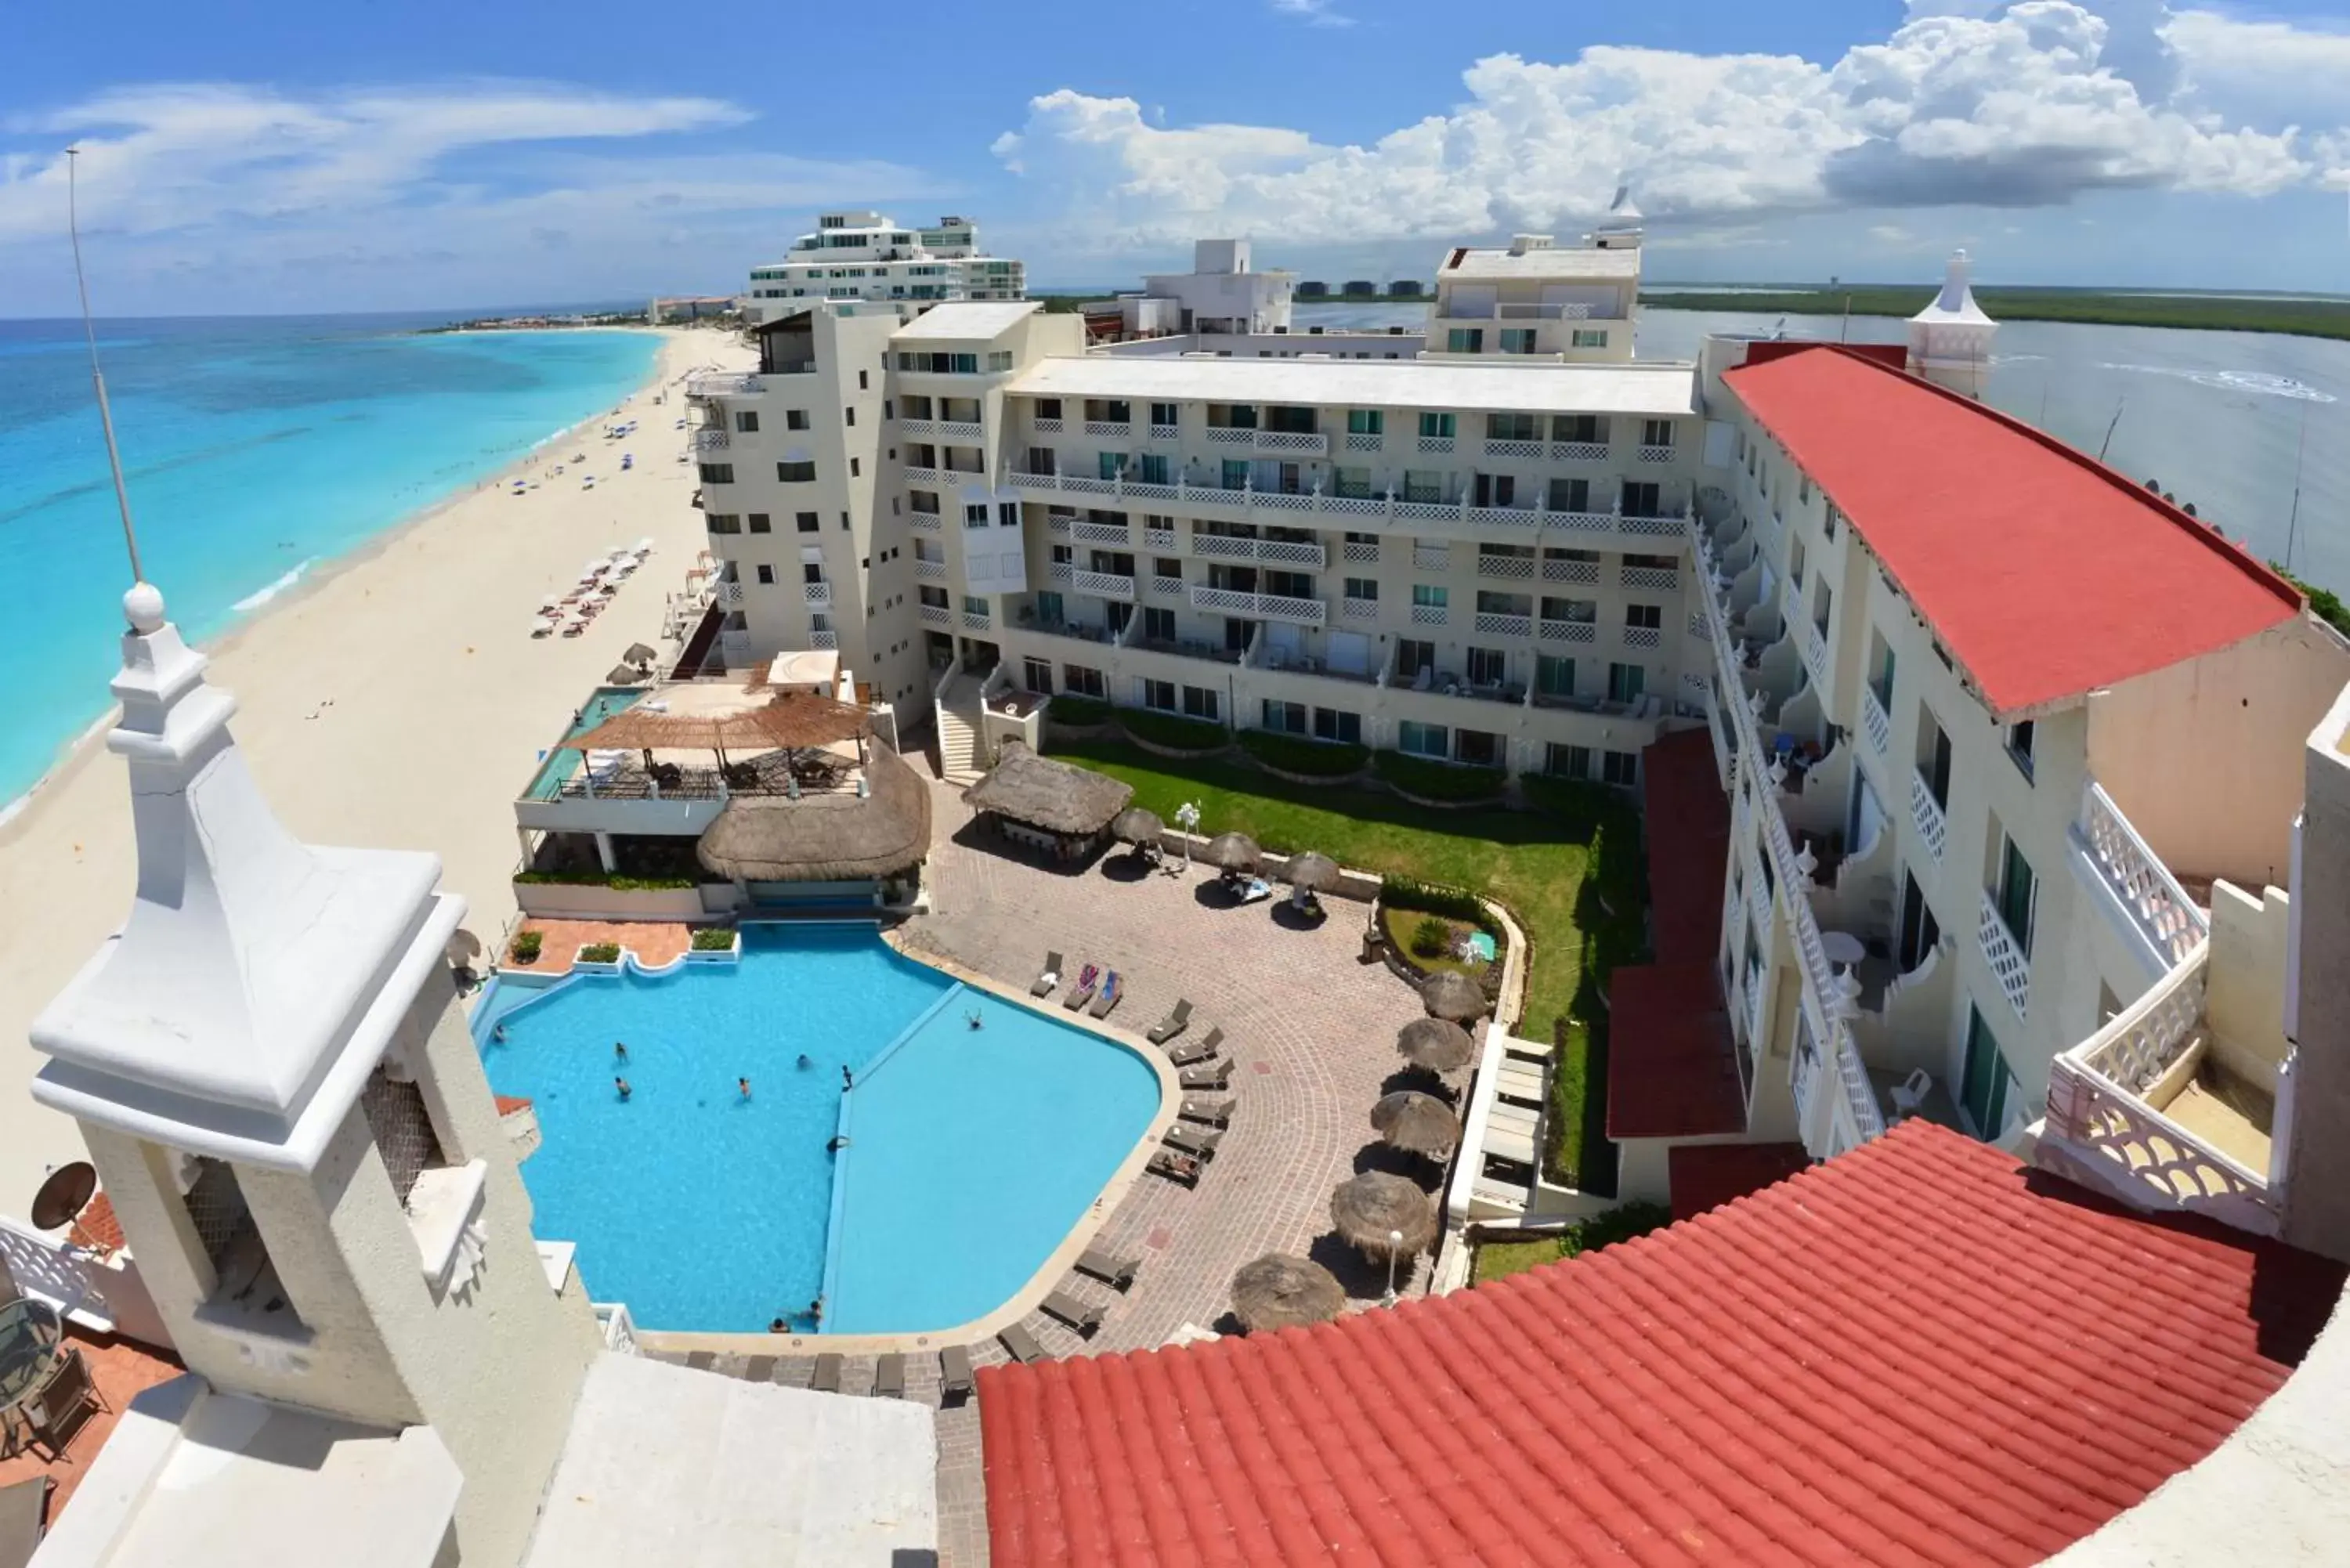 Facade/entrance, Bird's-eye View in BSEA Cancun Plaza Hotel